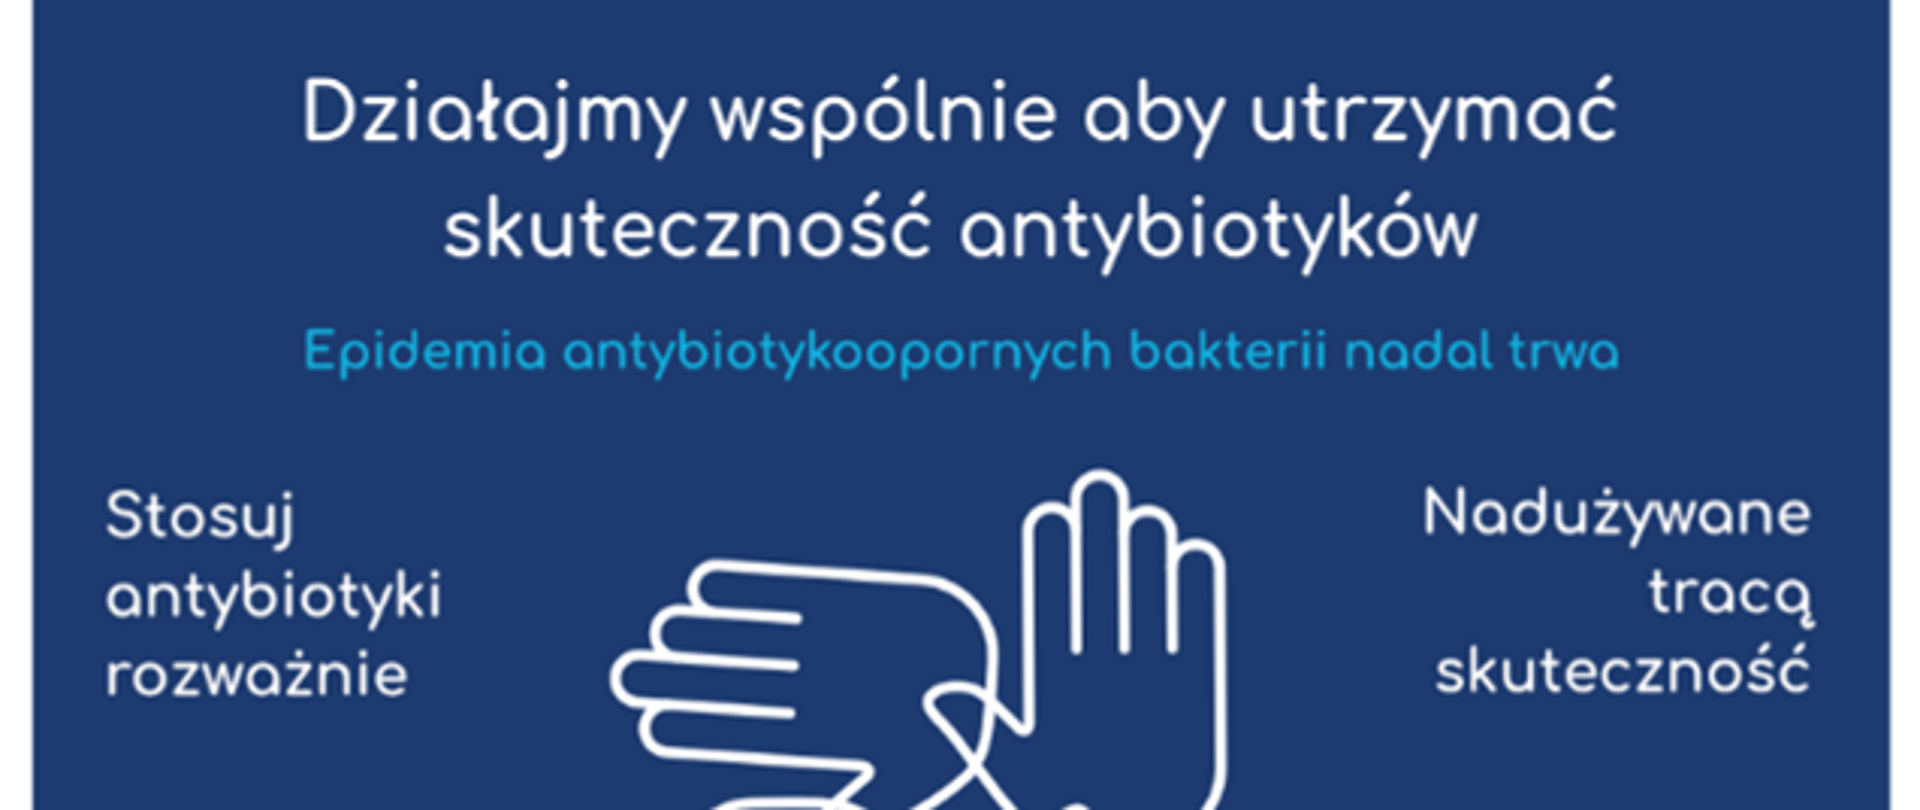 plakat zawiera informacje o skuteczności antybiotyków